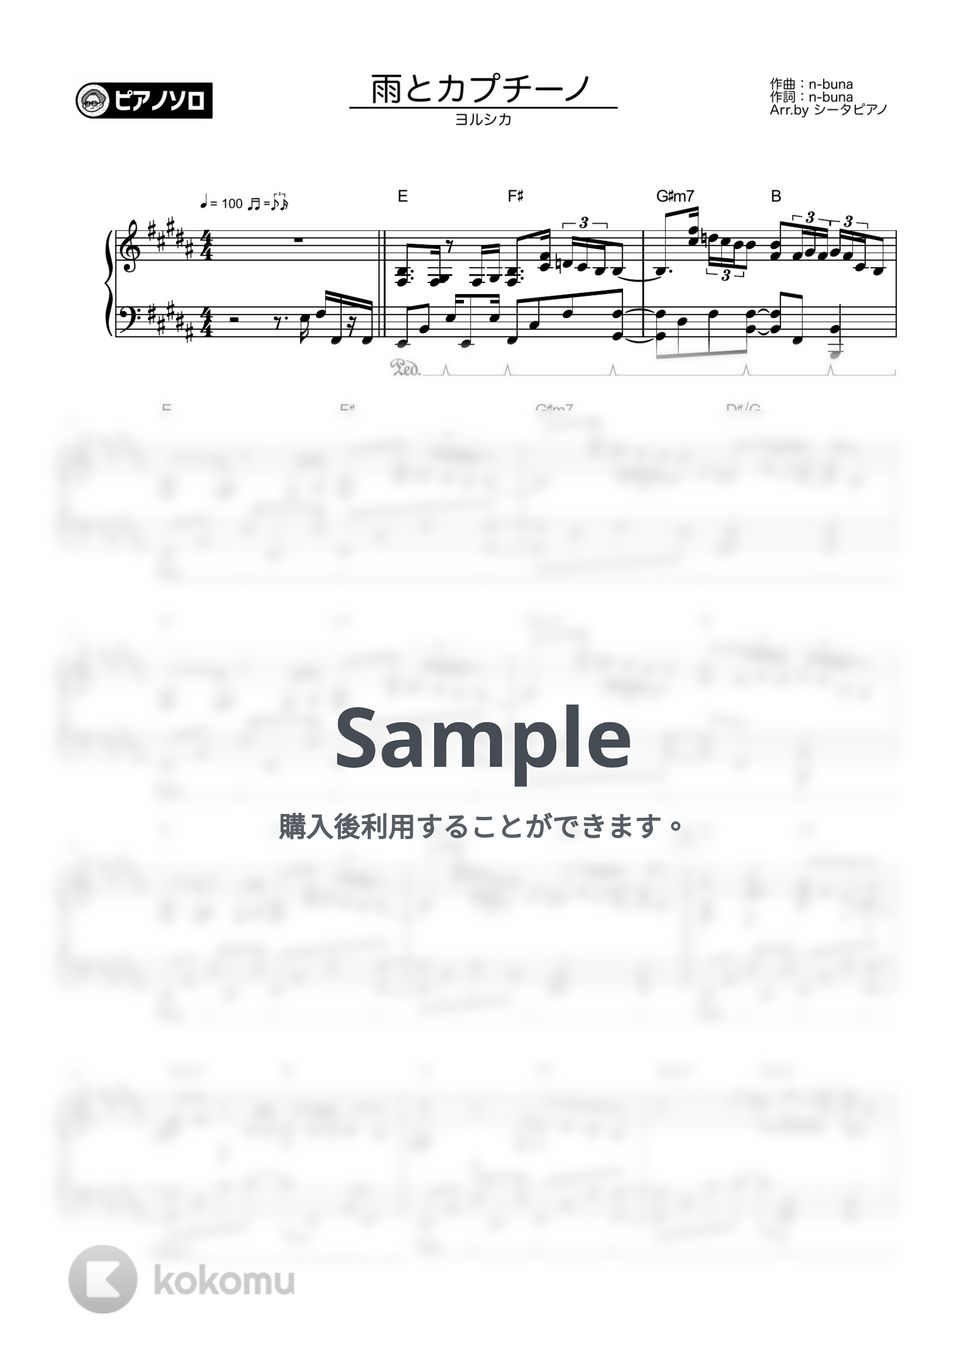 ヨルシカ - 雨とカプチーノ by シータピアノ